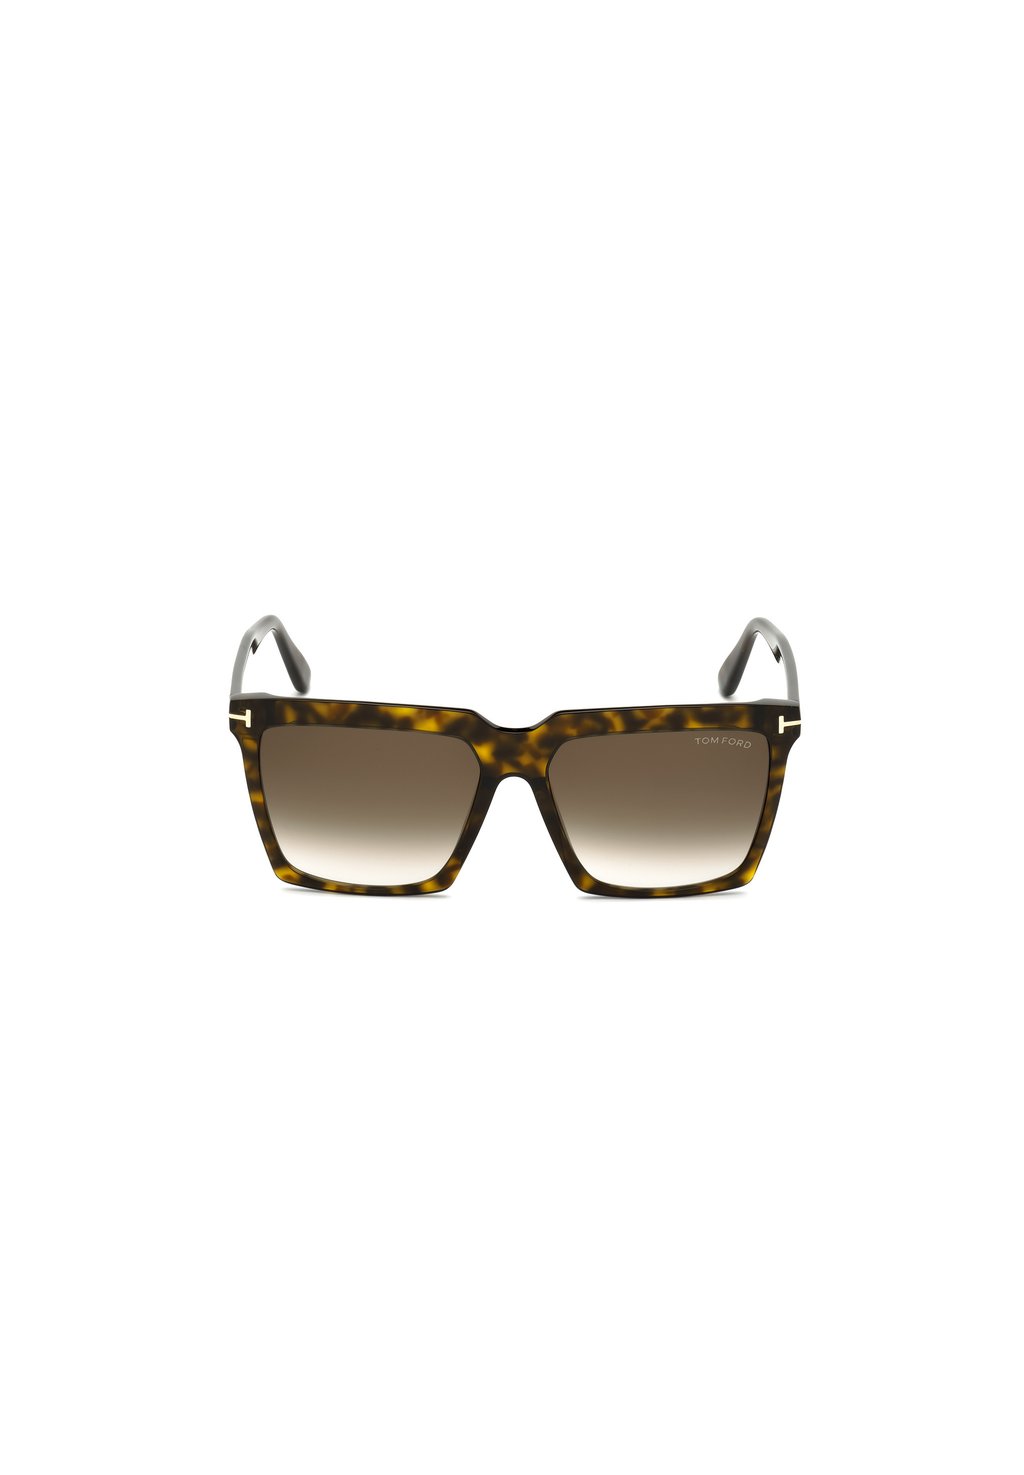 Солнцезащитные очки Tom Ford, Светло-коричневые Темно-коричневые (градиент)